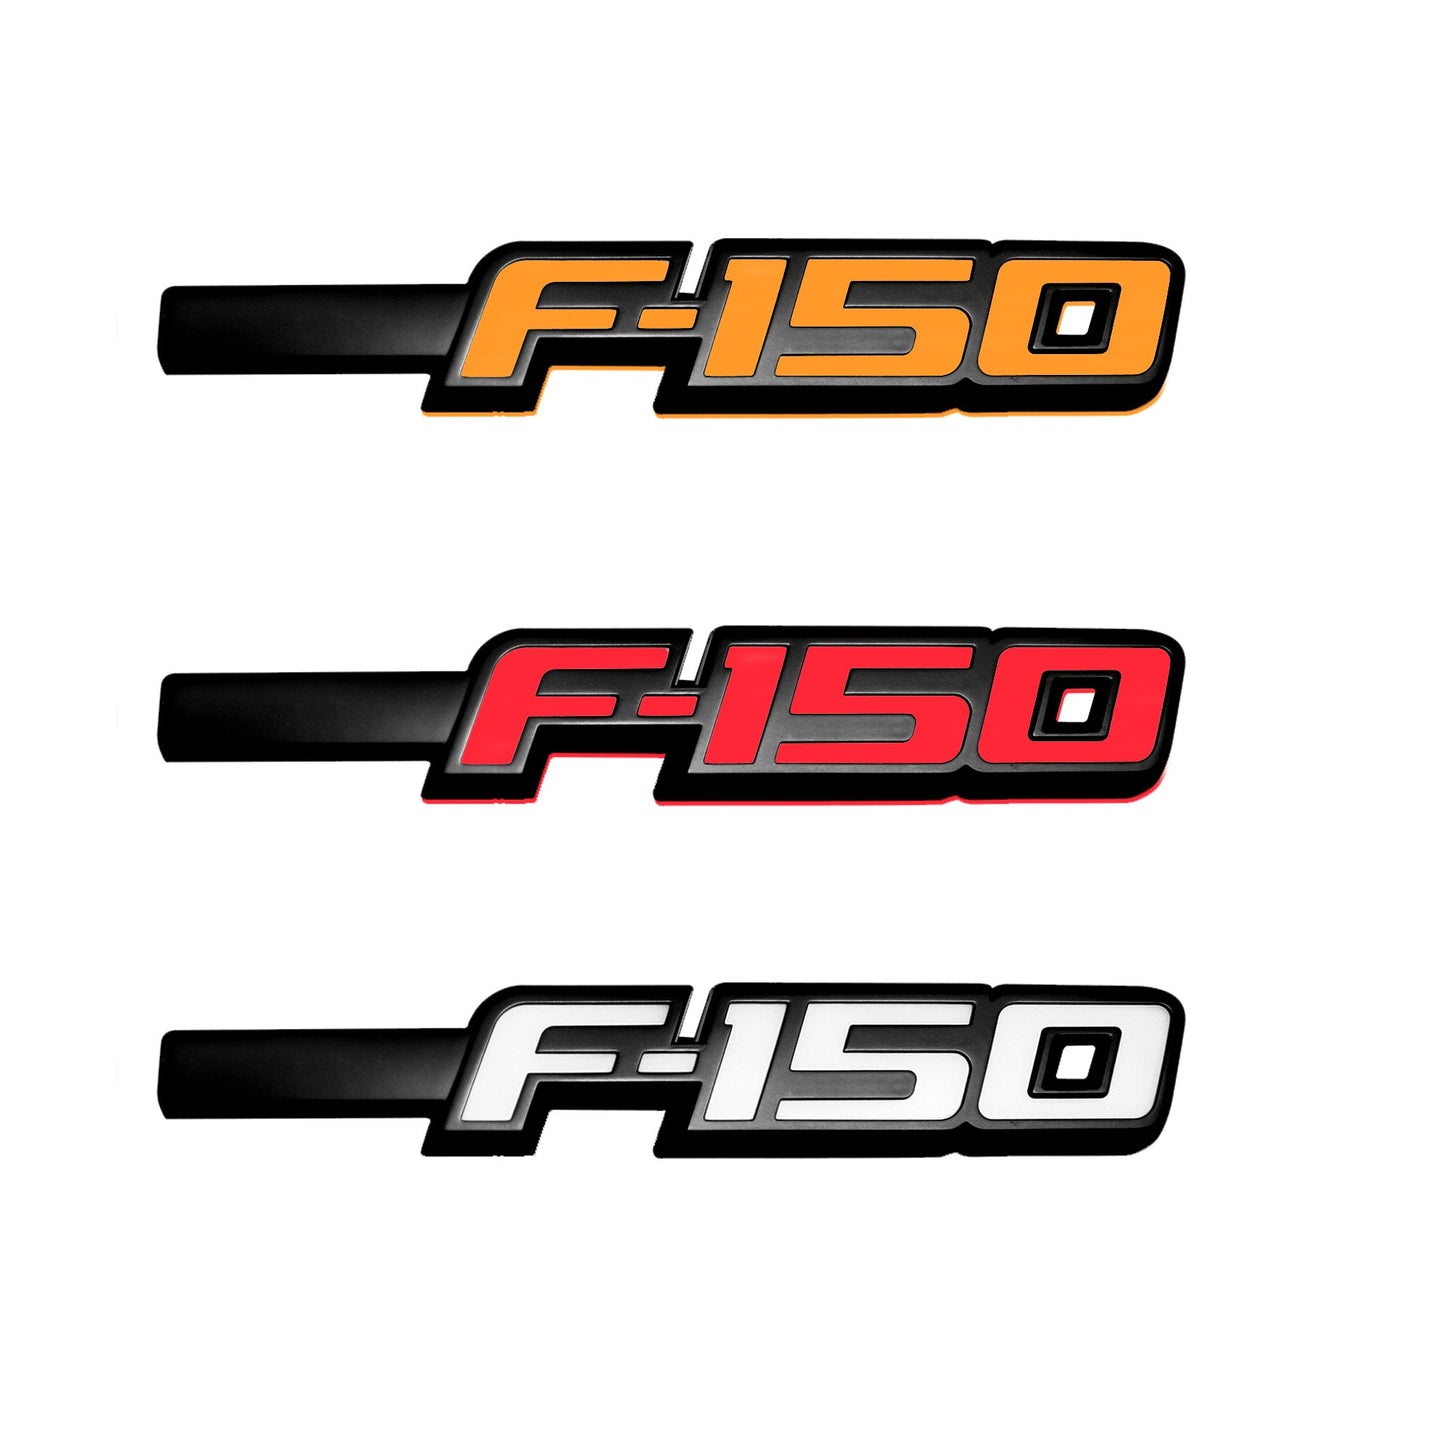 2009-2014 Ford F150 Illuminated Emblems Driver/Passenger Side Fender Emblems in Black Chrome - AMBER, RED, & WHITE